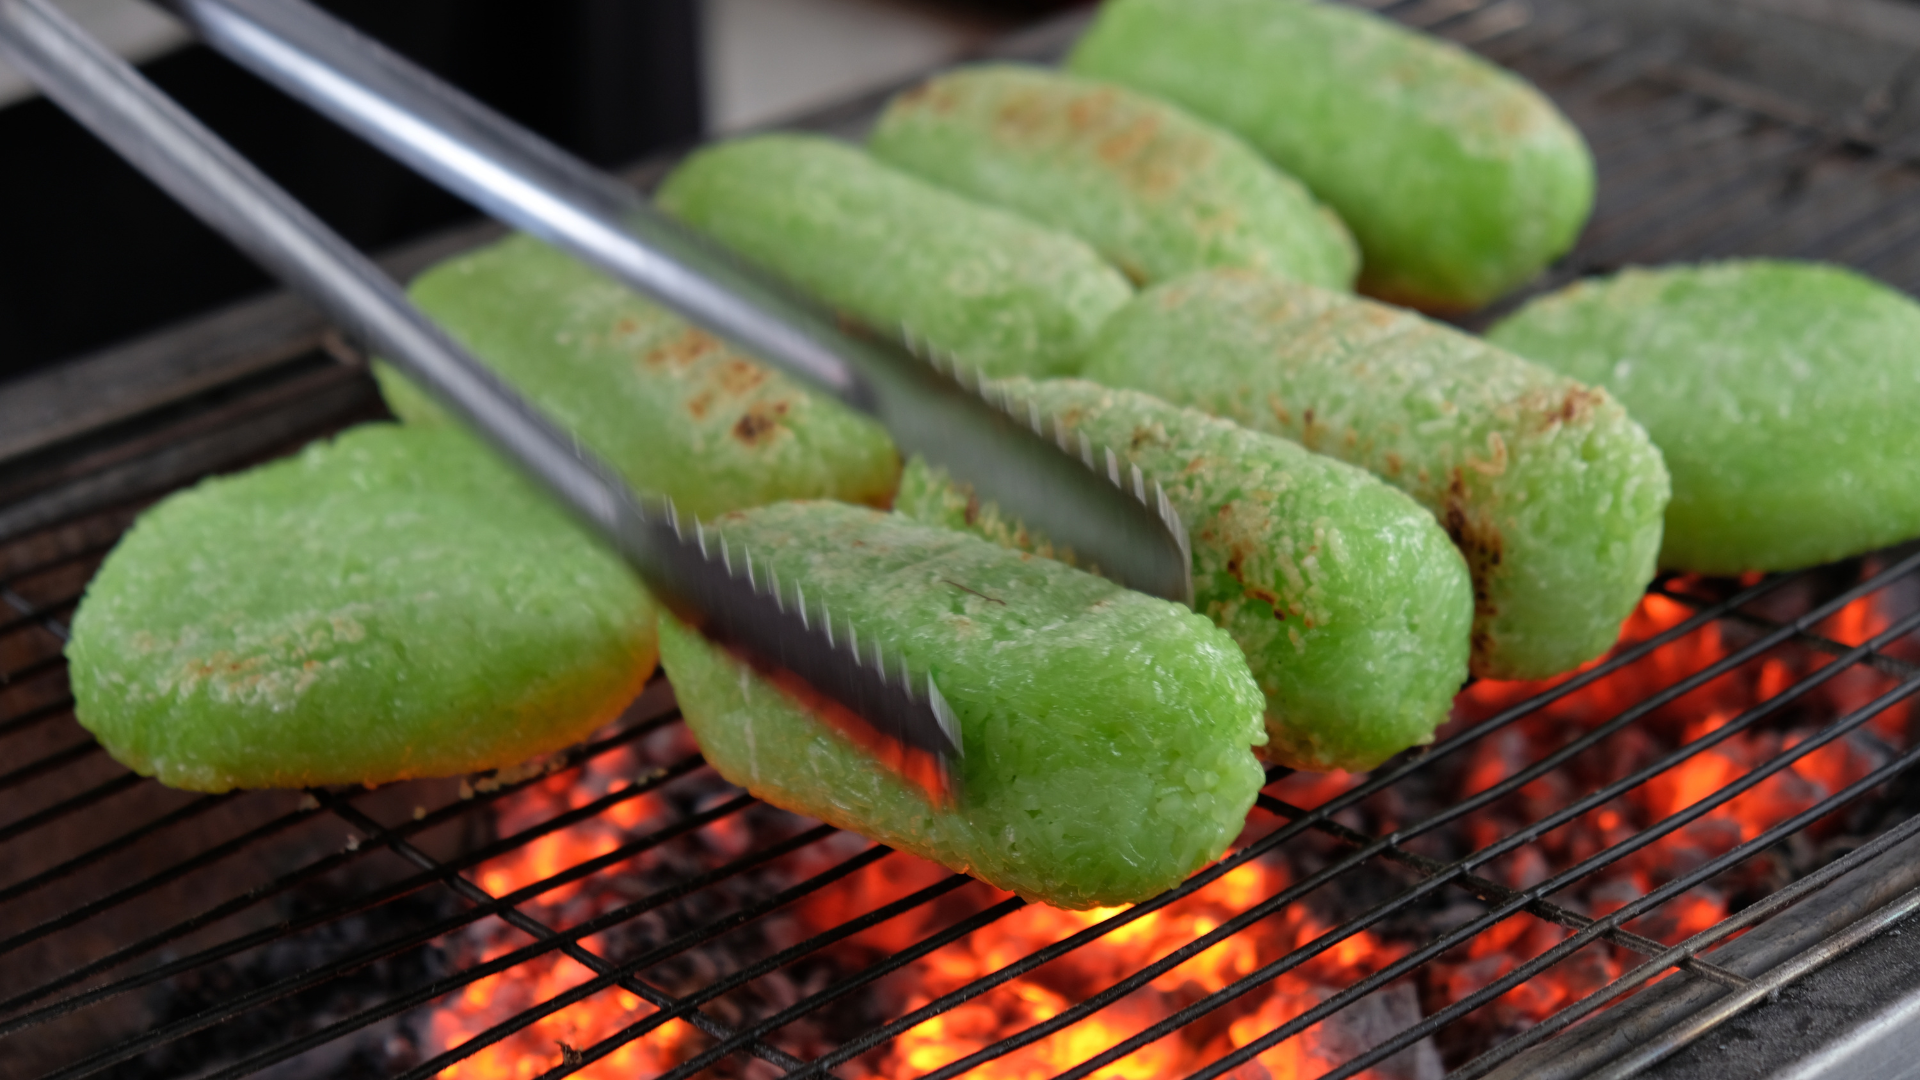 Bánh nếp nướng ăn kèm cốt dừa lá dứa xanh nõn siêu ngon tại Chợ Lớn- Ảnh 3.